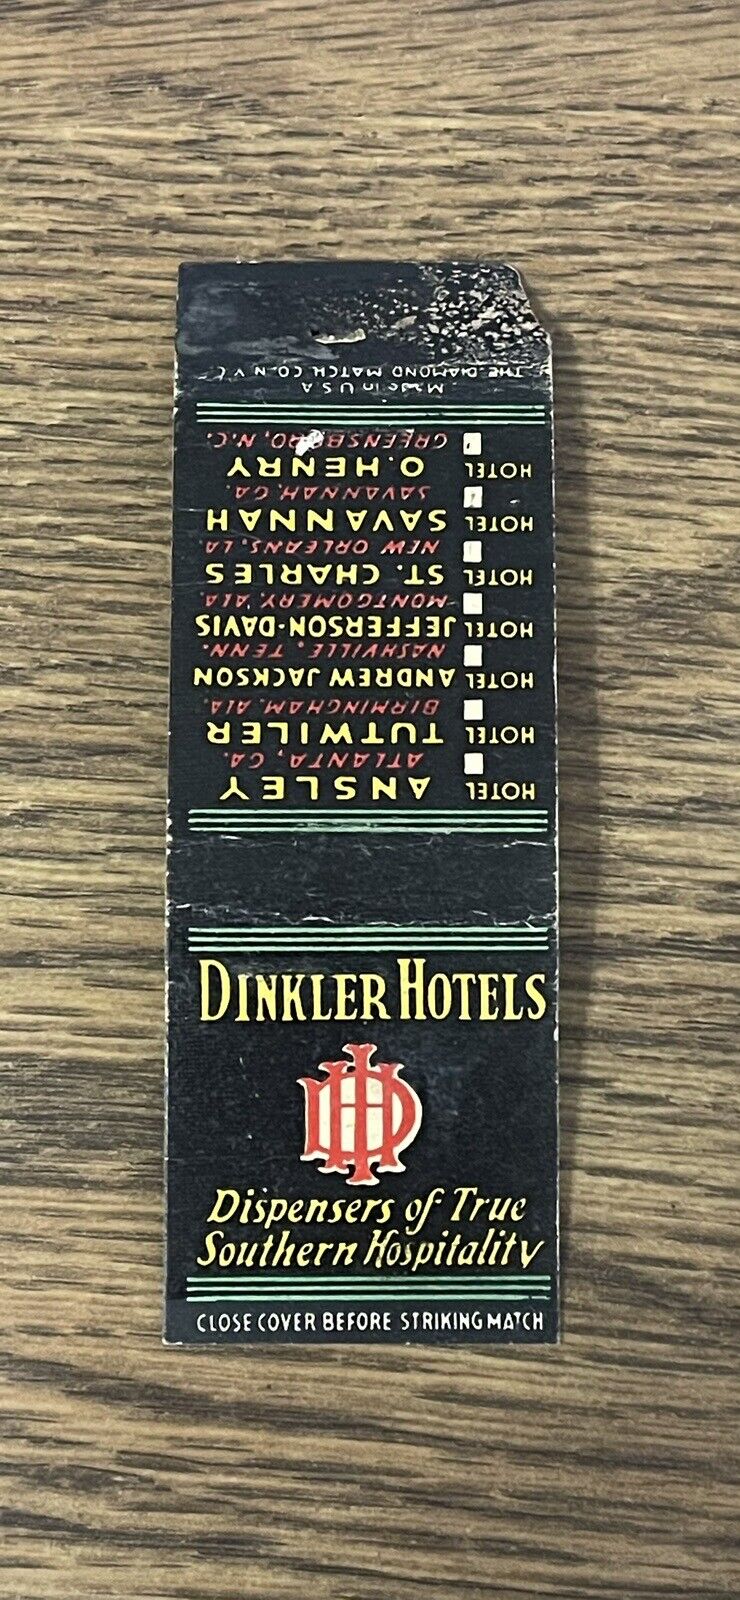 Dinkler Hotels Atlanta, GA Bobtailed Matchbook Cover